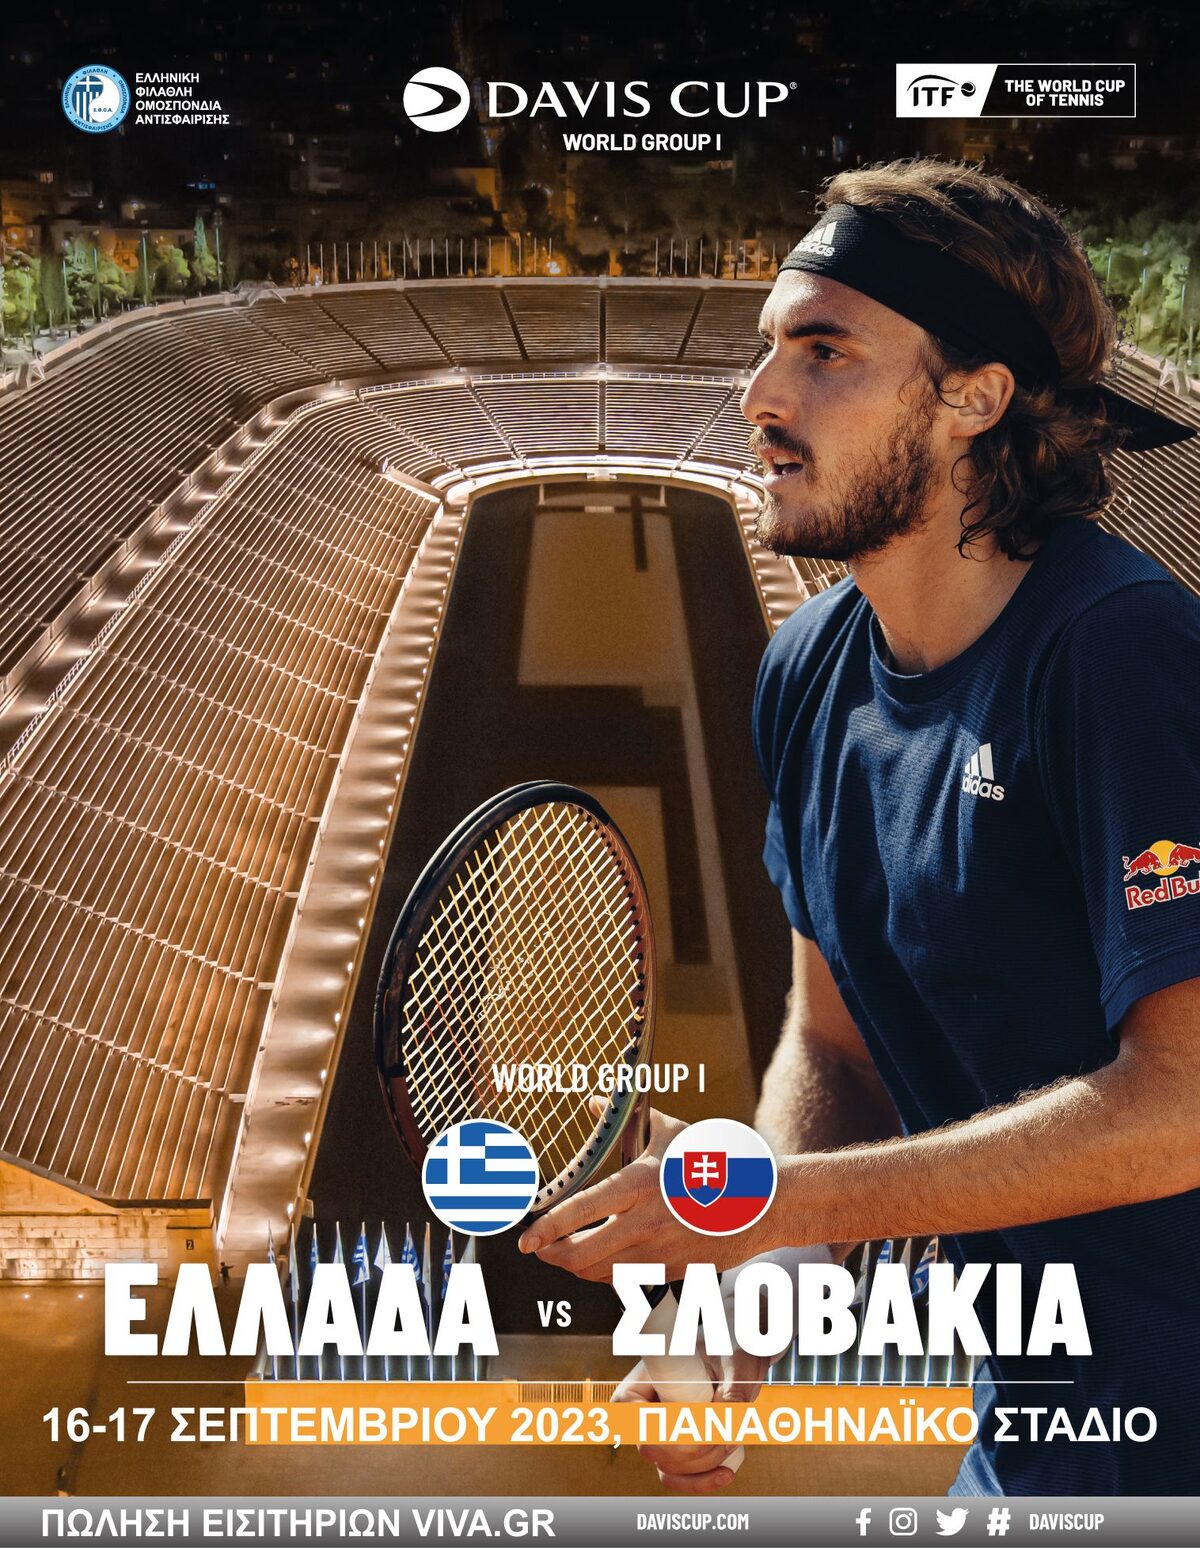 Η αφίσα του αγώνα για το Davis Cup